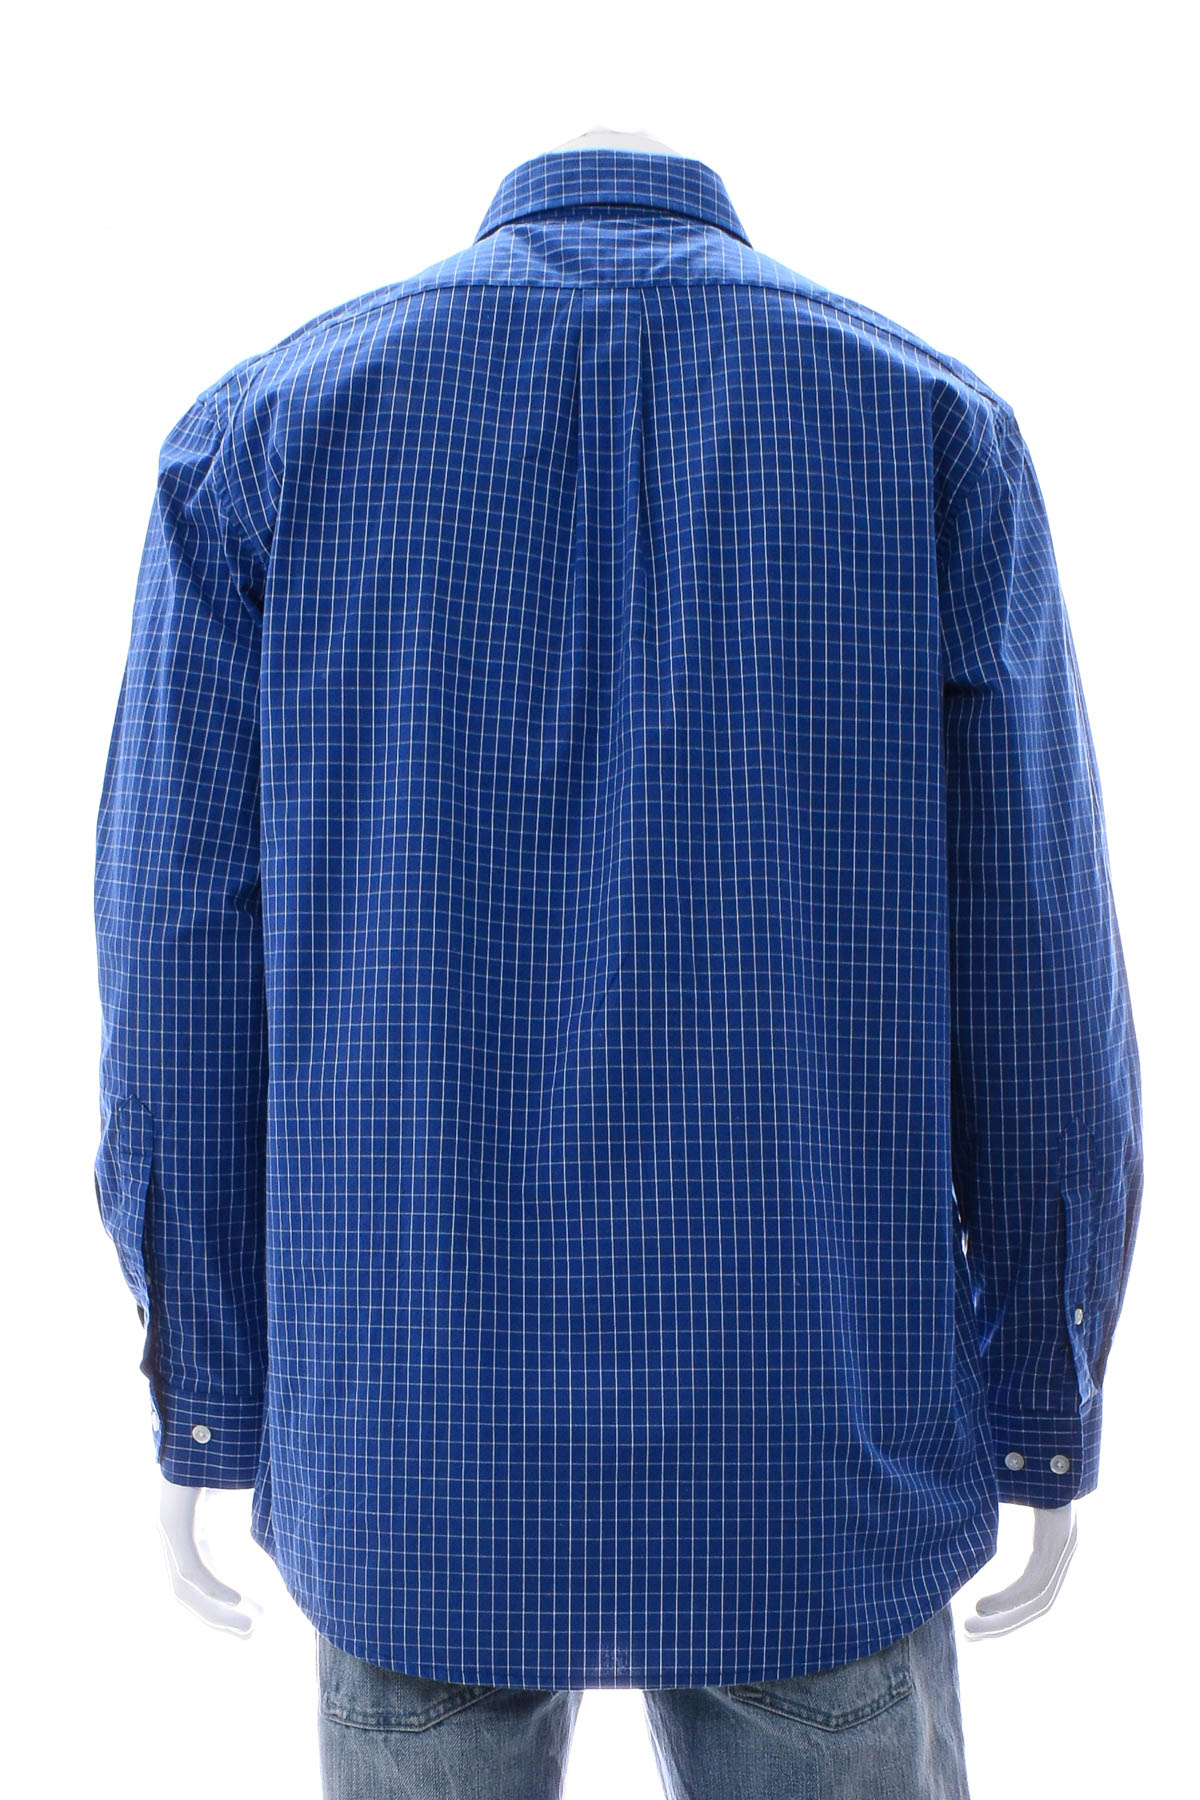 Ανδρικό πουκάμισο - Rolando - 1